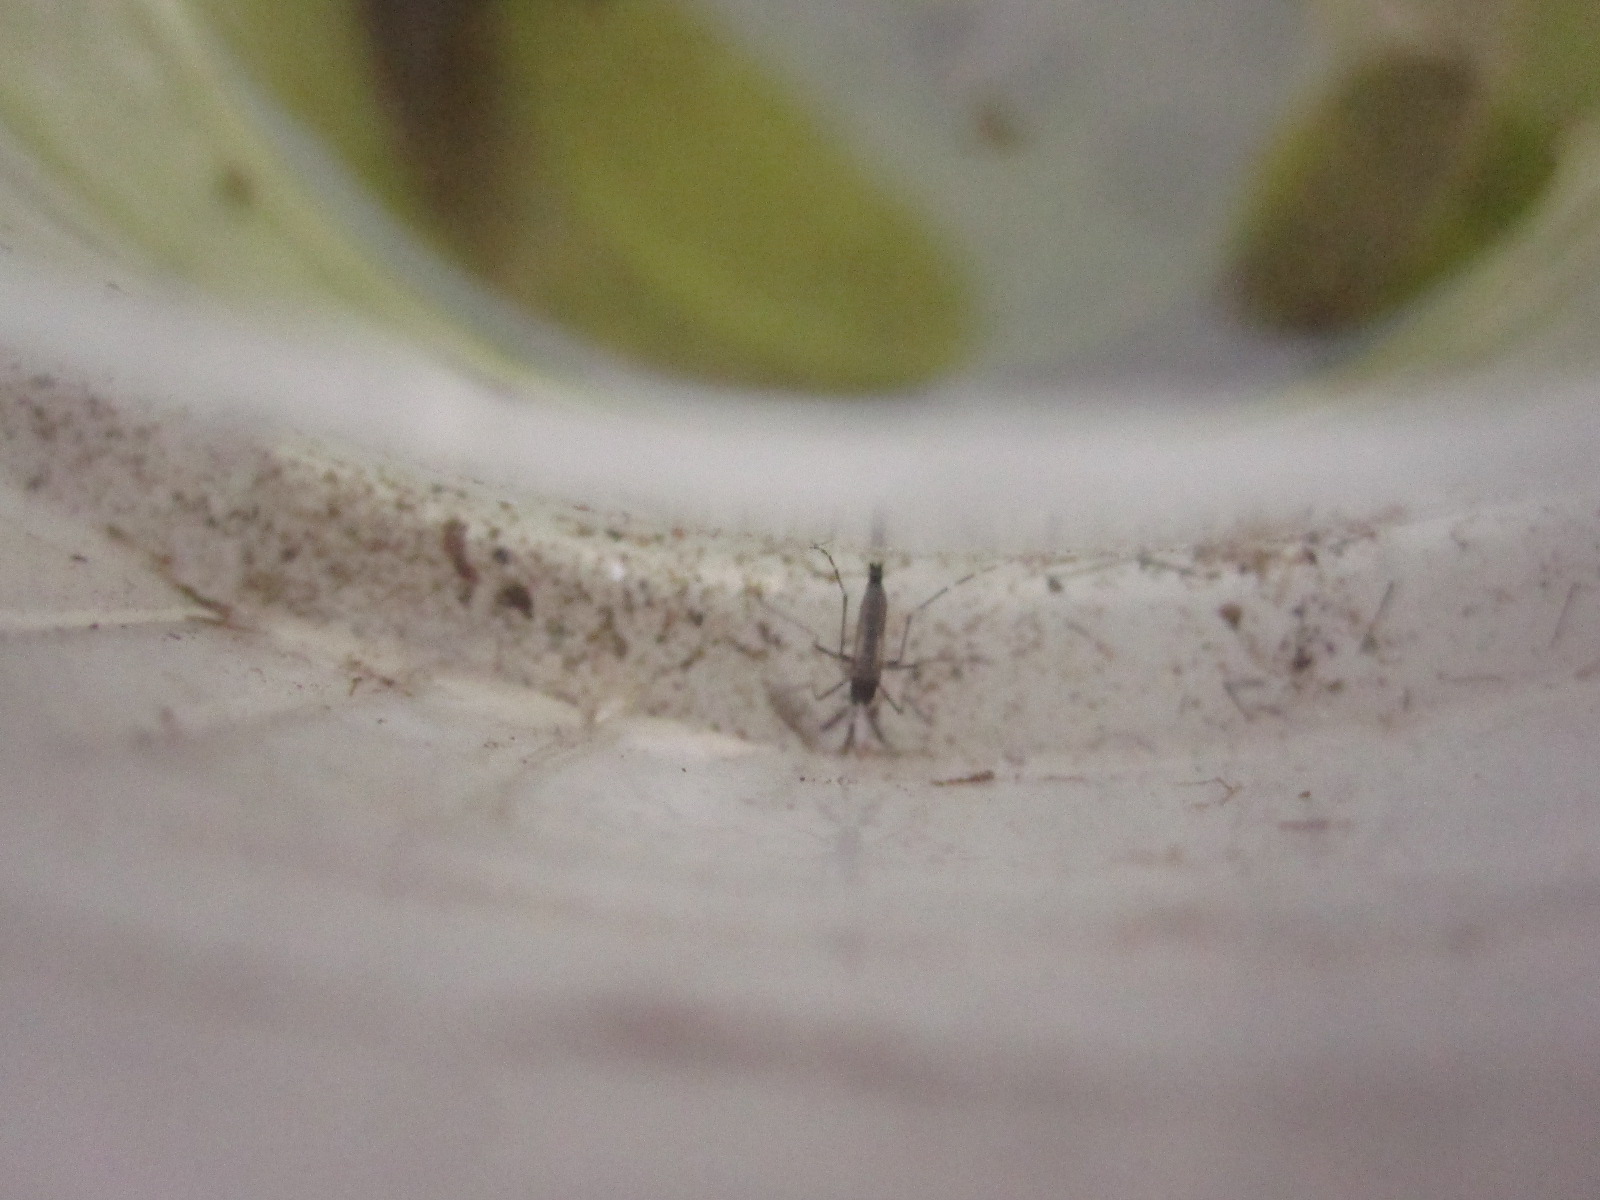 容器の縁に羽化した蚊の成虫の死骸が散乱している